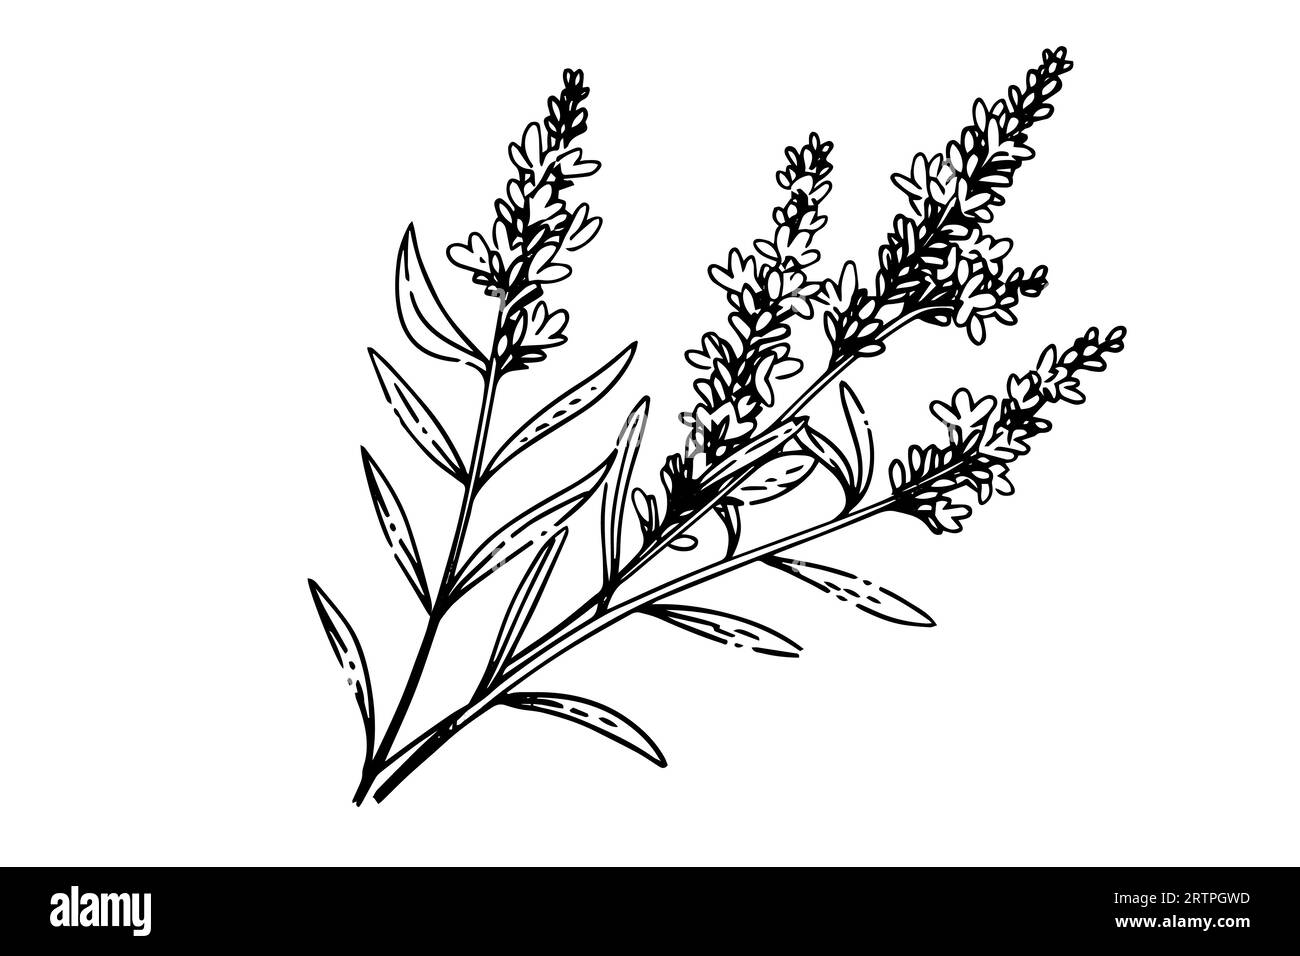 Floral botanical lavender flower hand drawn ink sketch. Vector engraving illustration. Stock Vector